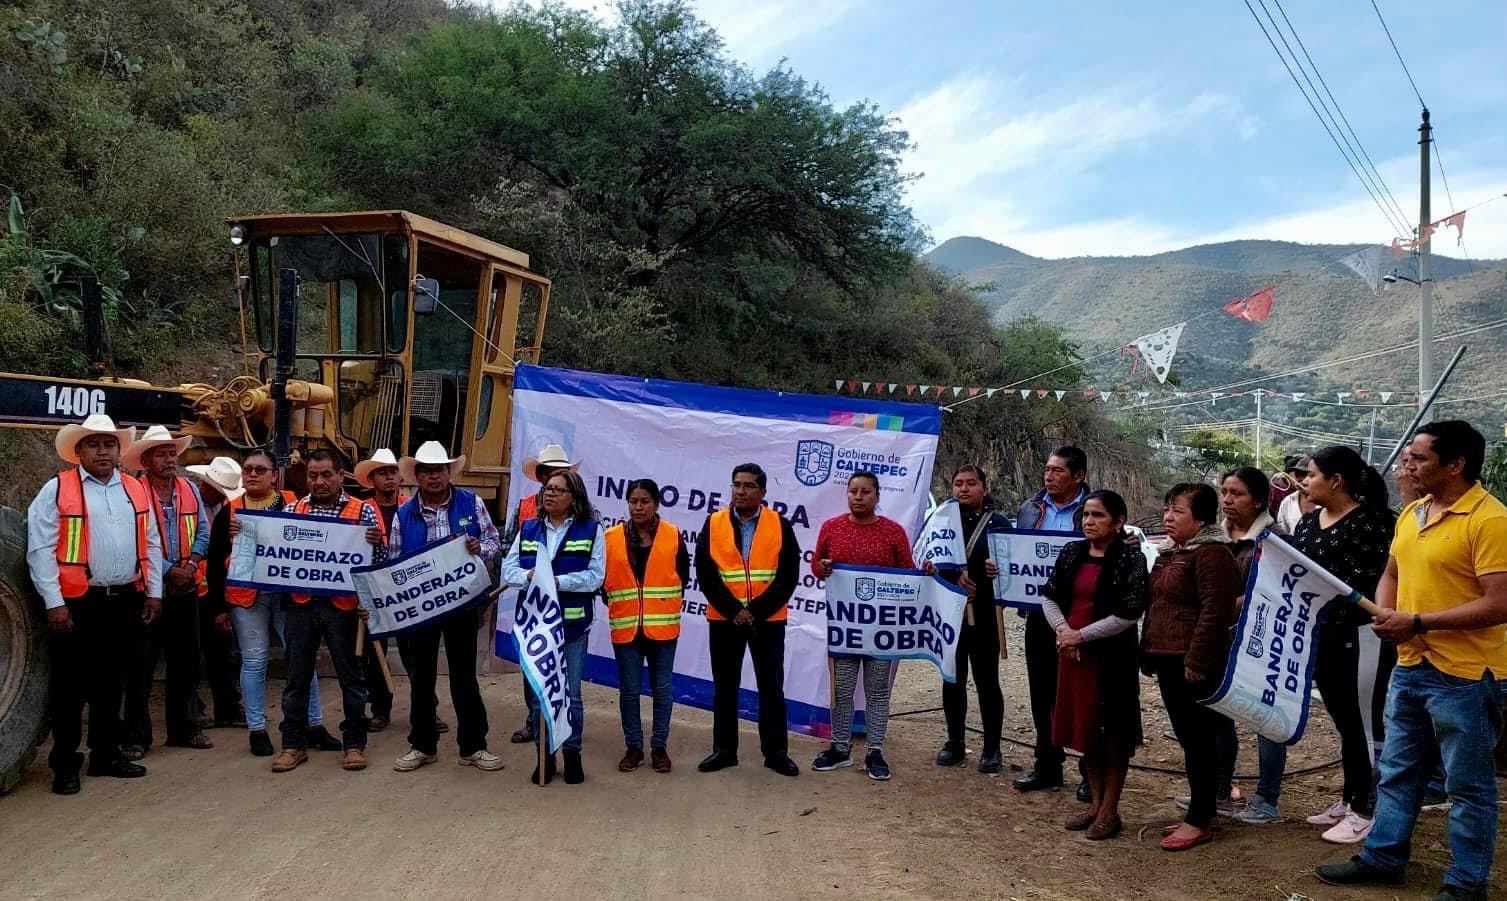 Inicio de obra: Rehabilitación de camino saca cosechas tramo Caltepec-Coatepec